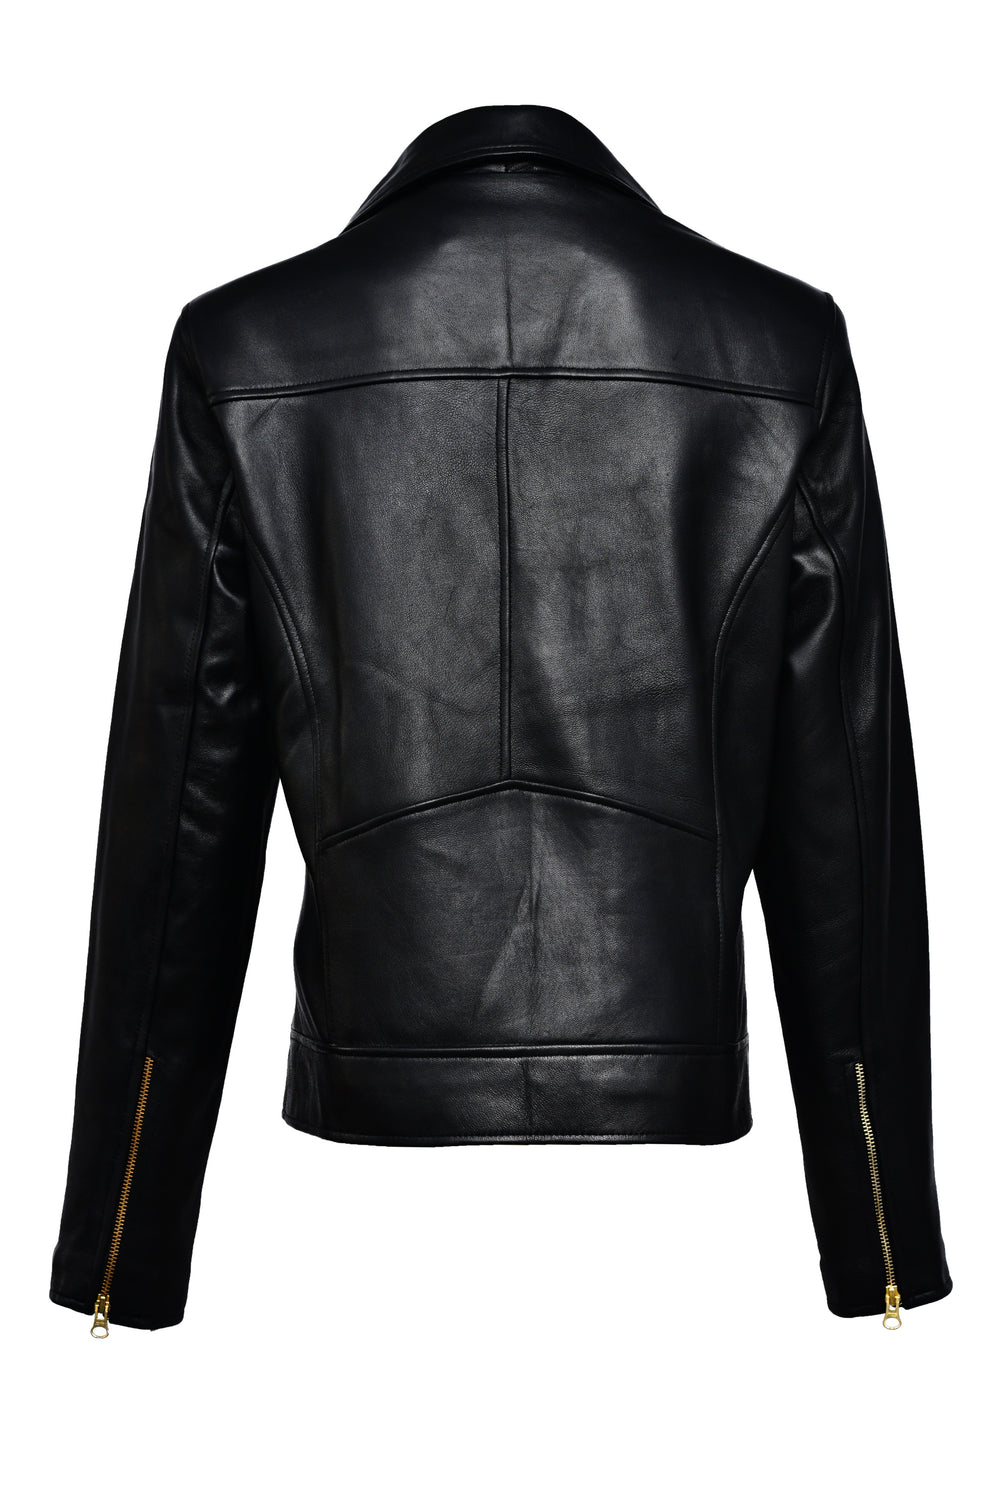 Online Leather Jacket Women